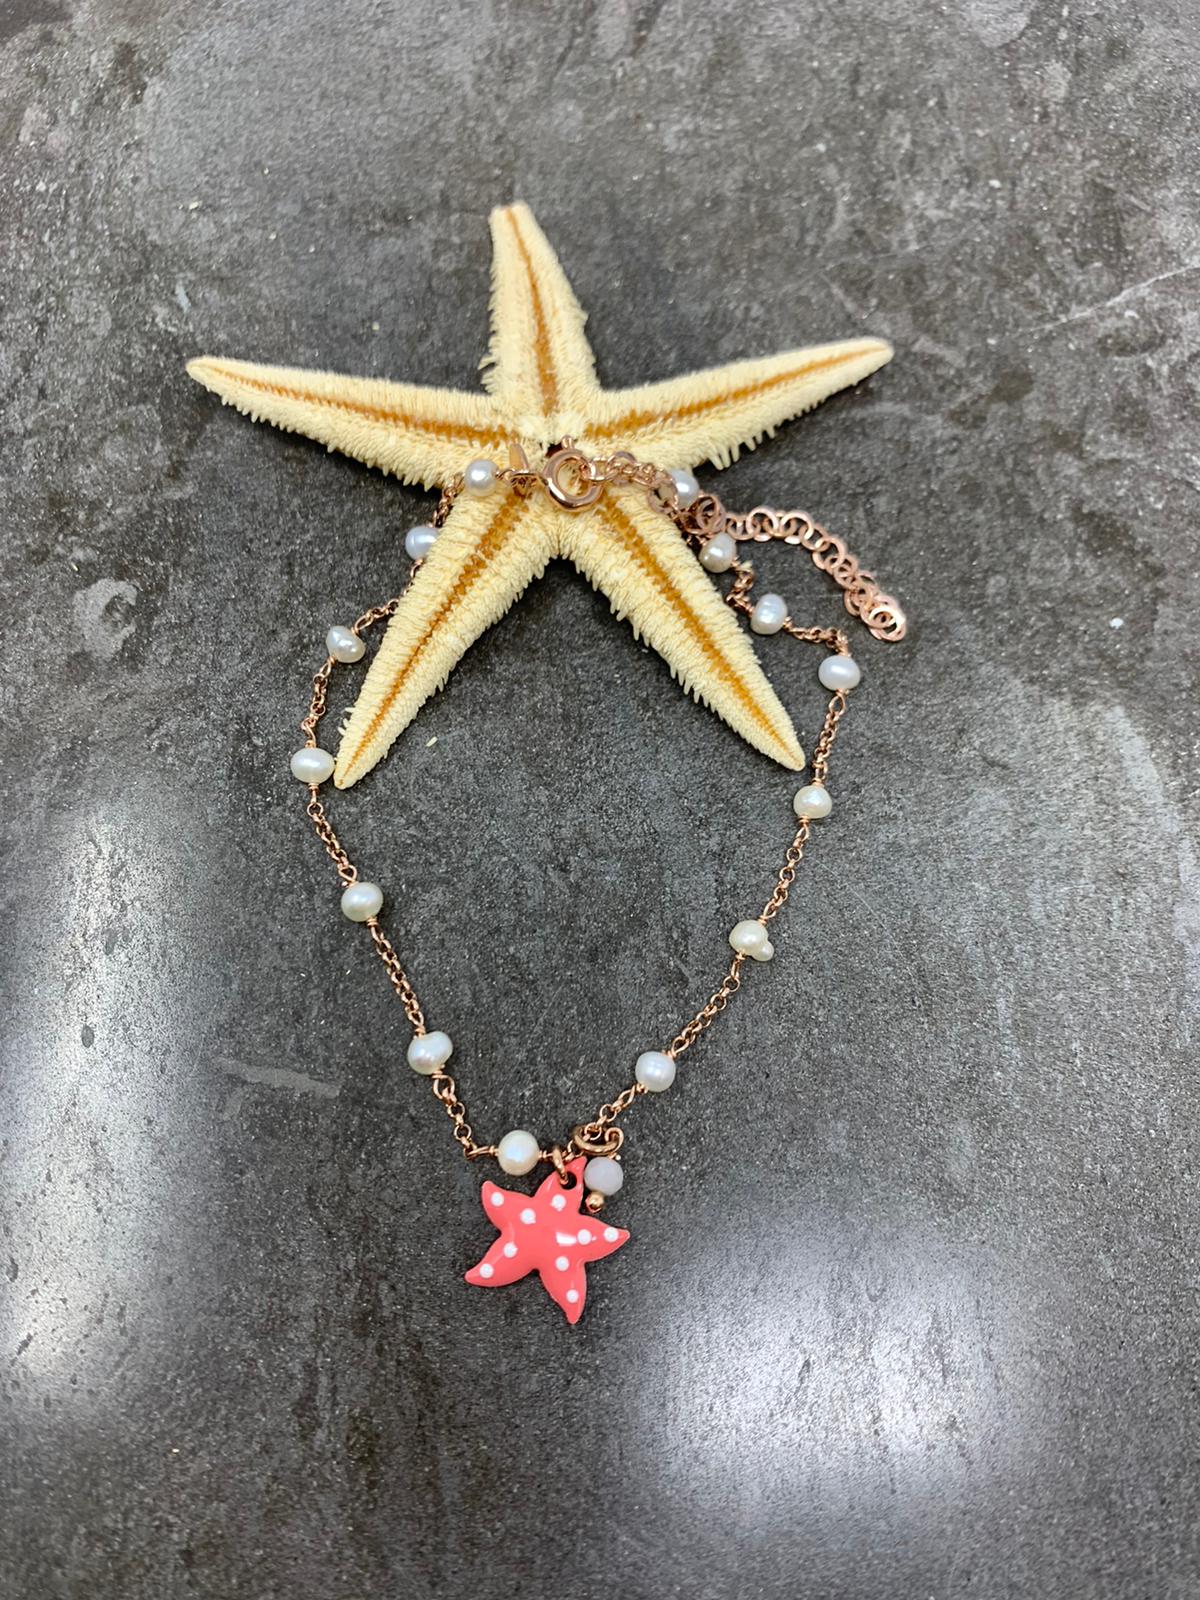 Cavigliera catena rosè alternata a perle con stella marina a pois cm 21